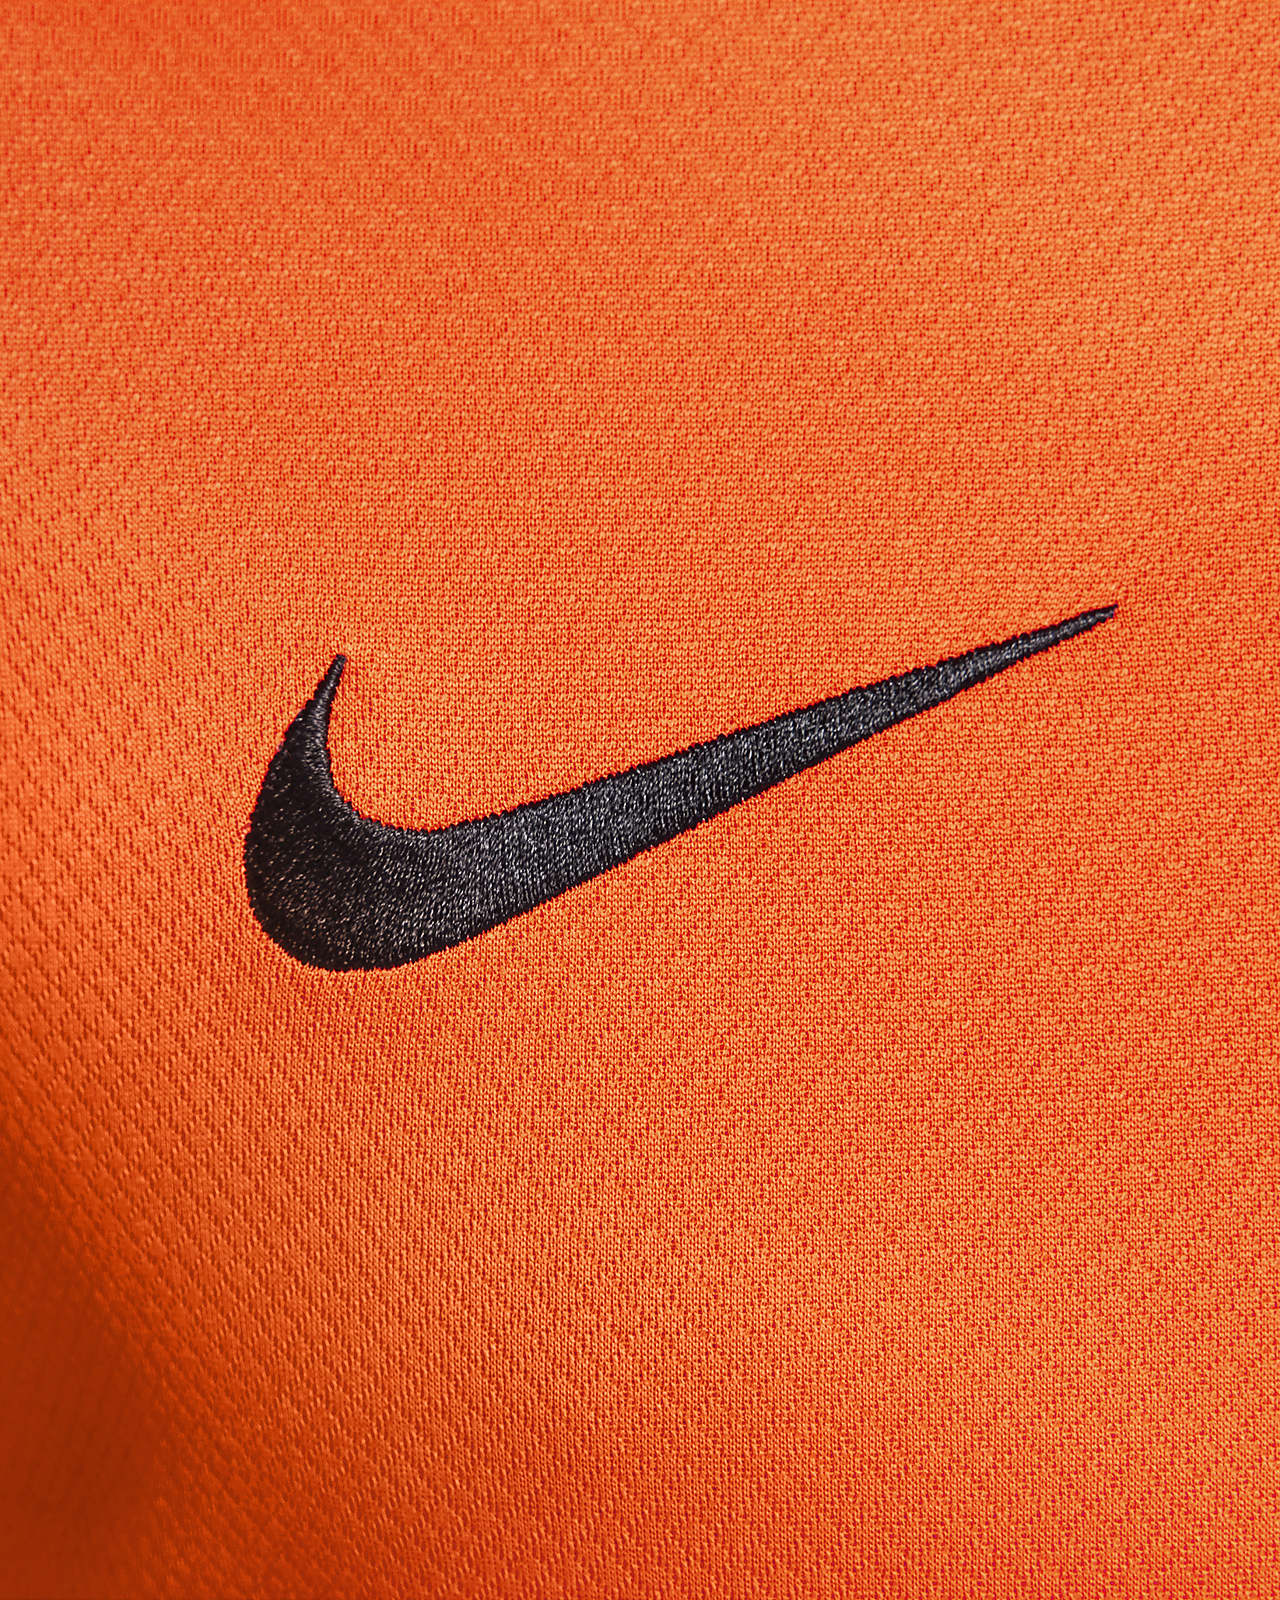 Nike Inter Milan 23/24 Third Jersey (Orange)